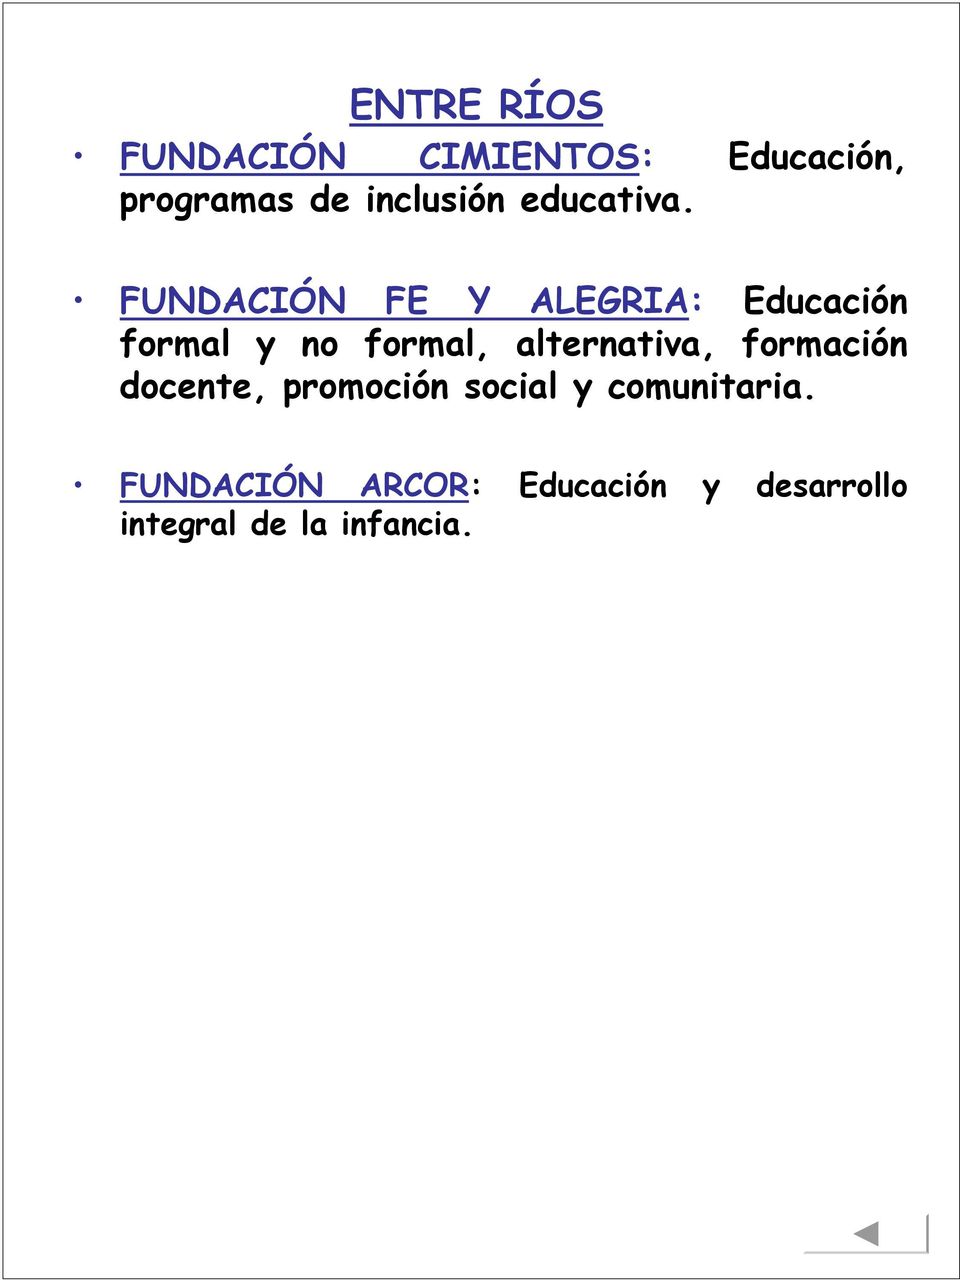 FUNDACIÓN FE Y ALEGRIA: Educación formal y no formal,